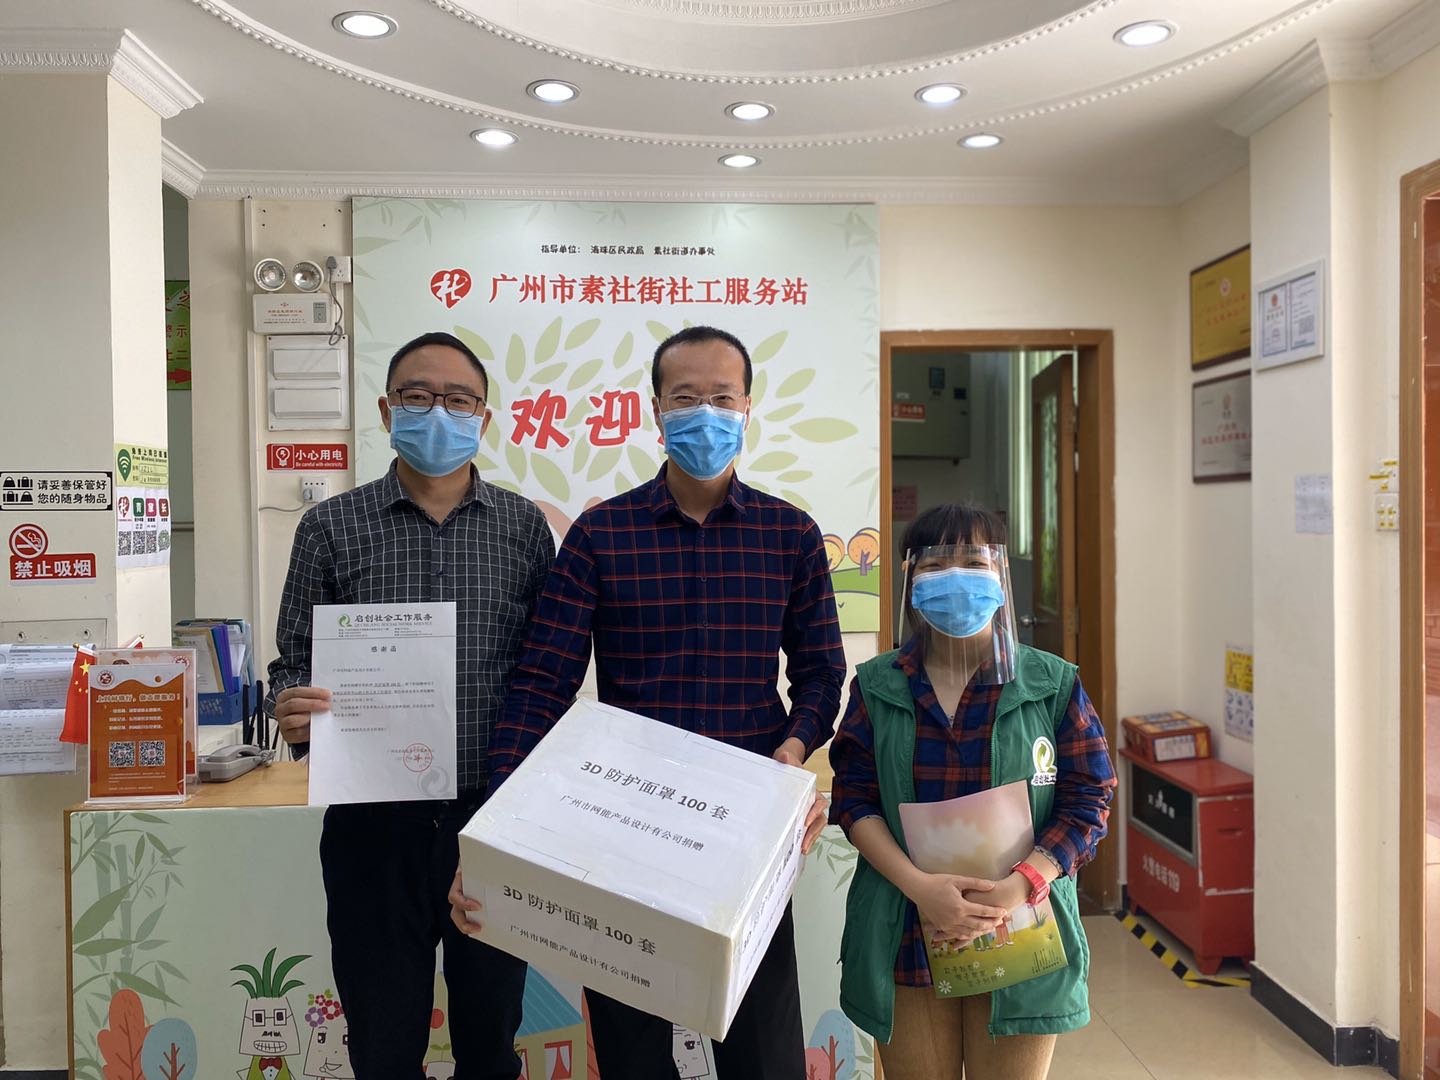 立体易为广州市海珠疾控中心捐赠100套3d防护面罩，抗击疫情，支持安全复工，我们在行动[加油]